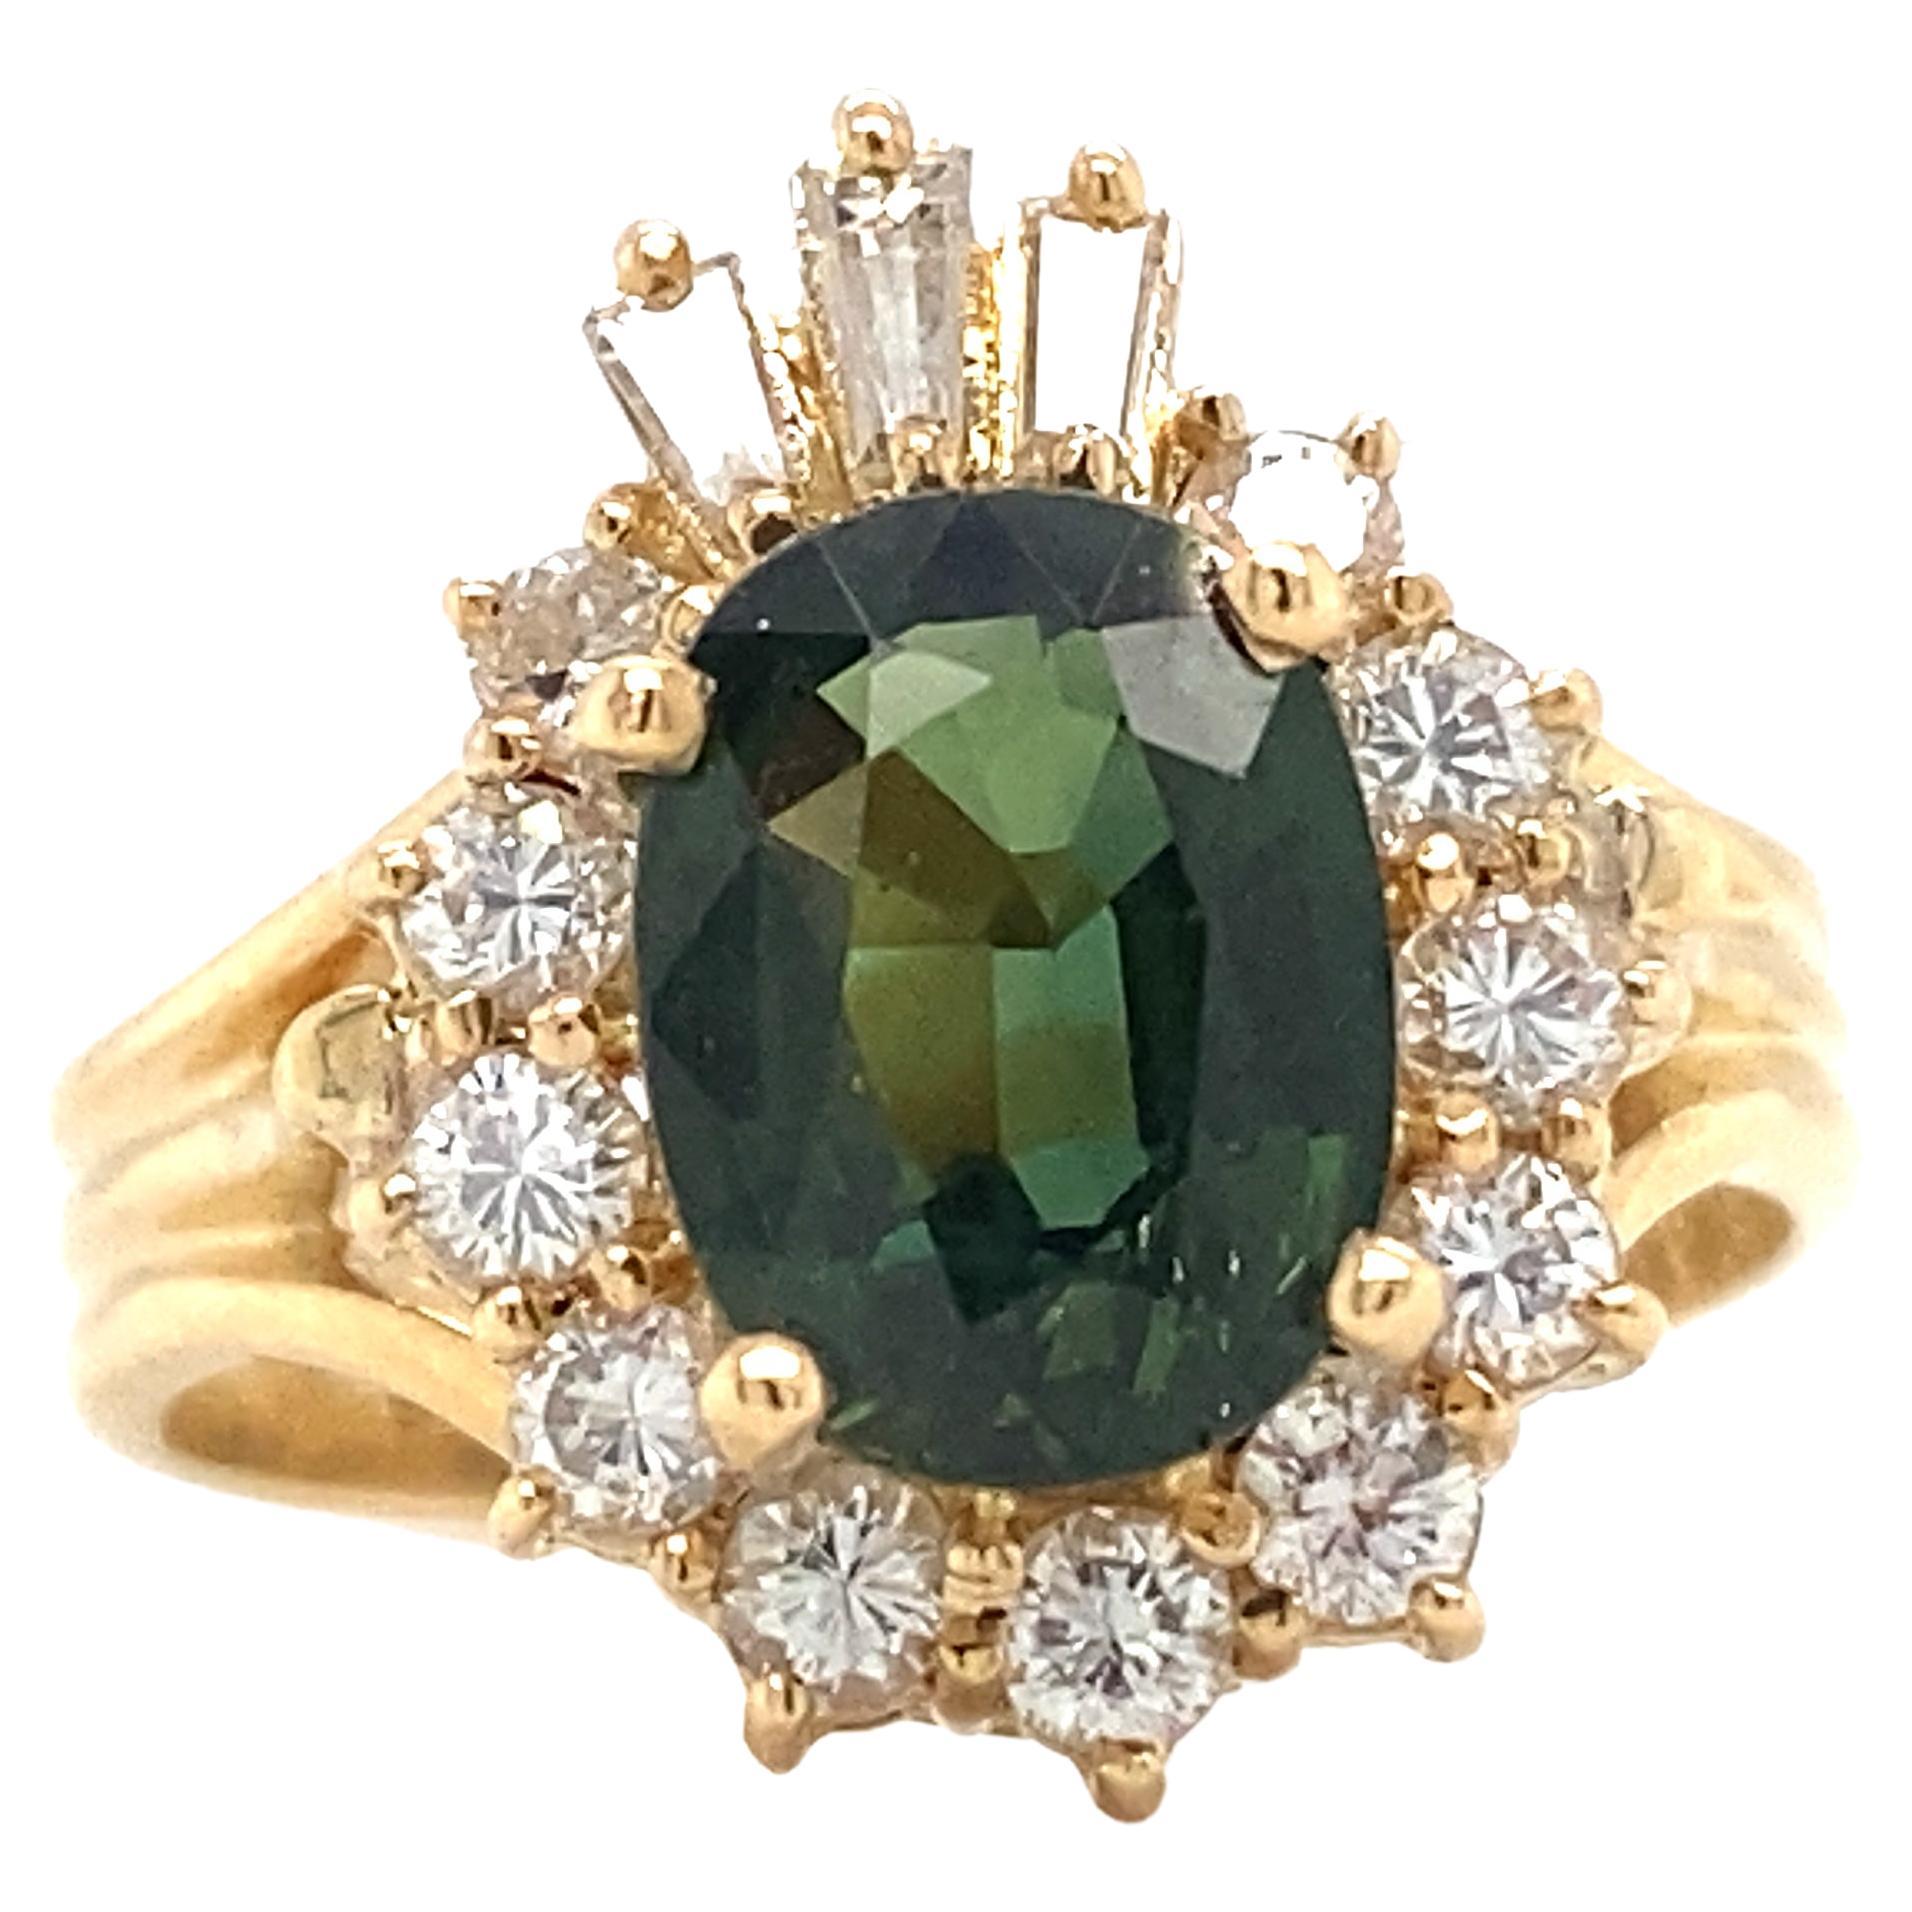 Artikel-Details: Dieser einzigartige Ring von Le Vian ist mit einem grünen Saphir und Diamanten verziert. Die auffällige Farbe des grünen Saphirs hebt sich wunderbar von den funkelnden Diamanten und dem Gelbgold ab. Alle Diamanten und Saphire sind